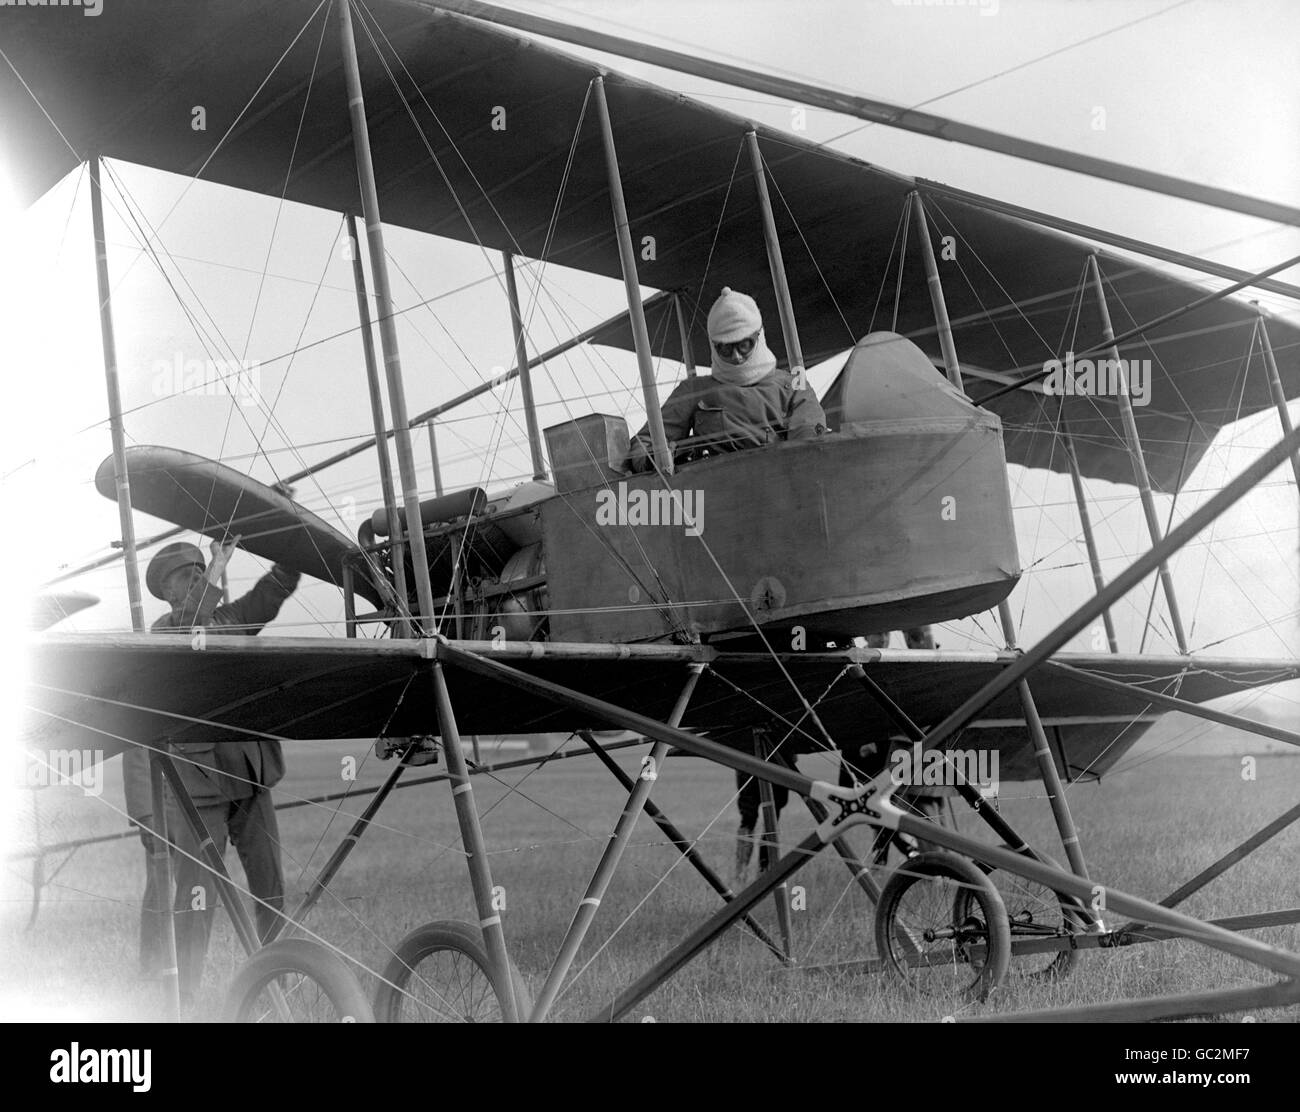 Aviation - Concours de vol de l'armée - plaine de Salisbury.Le lieutenant Arthur Longmore, de la Marine royale, dans son biplan lors des compétitions de vol de l'Armée de terre sur la plaine de Salisbury. Banque D'Images